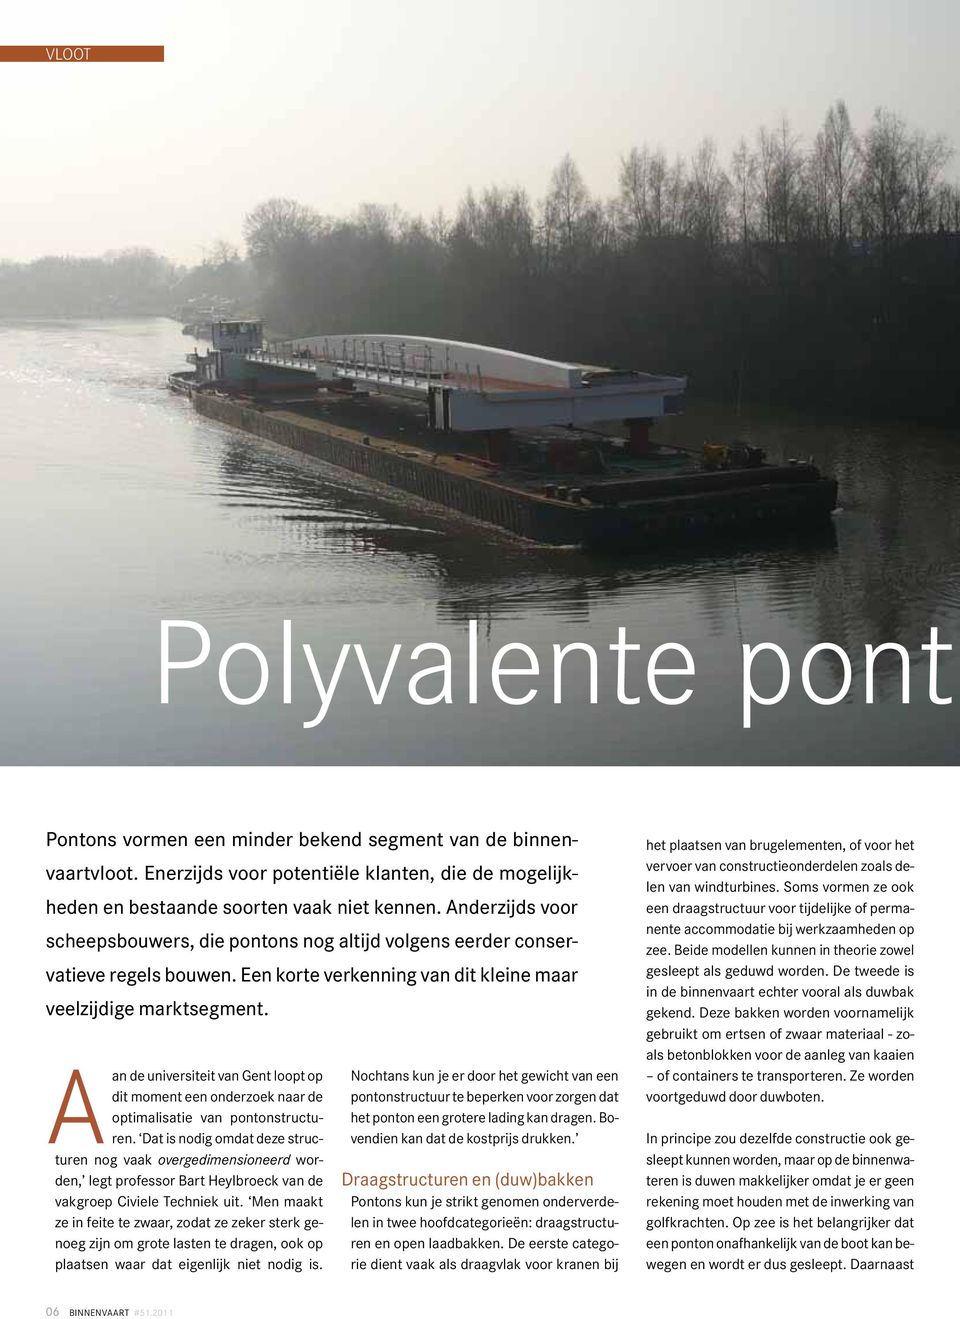 Aan de universiteit van Gent loopt op dit moment een onderzoek naar de optimalisatie van pontonstructuren.